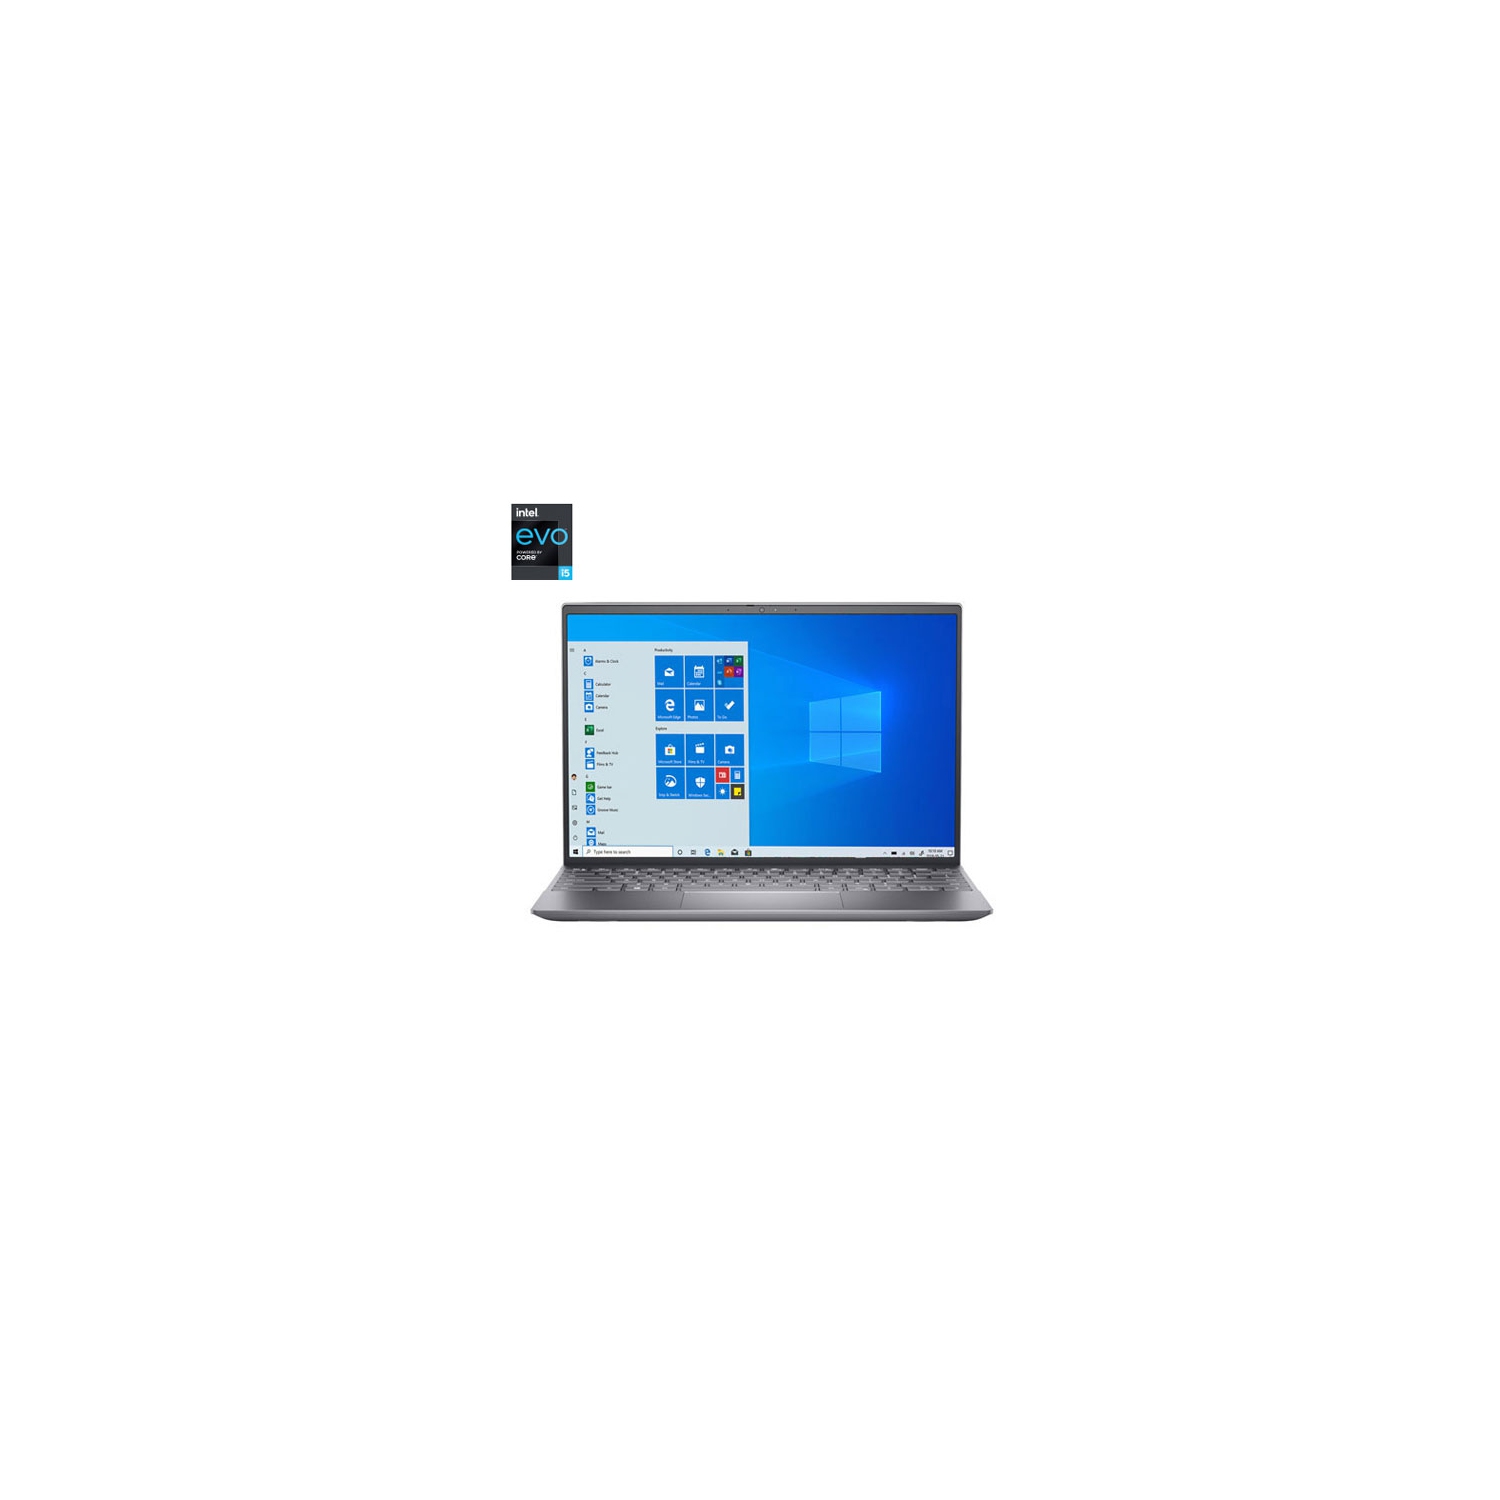 Dell Inspiron 13 13.3" Laptop - Silver (11th Gen Intel Core i5-11320H/256GB SSD/8GB RAM/Windows 10) - Open Box